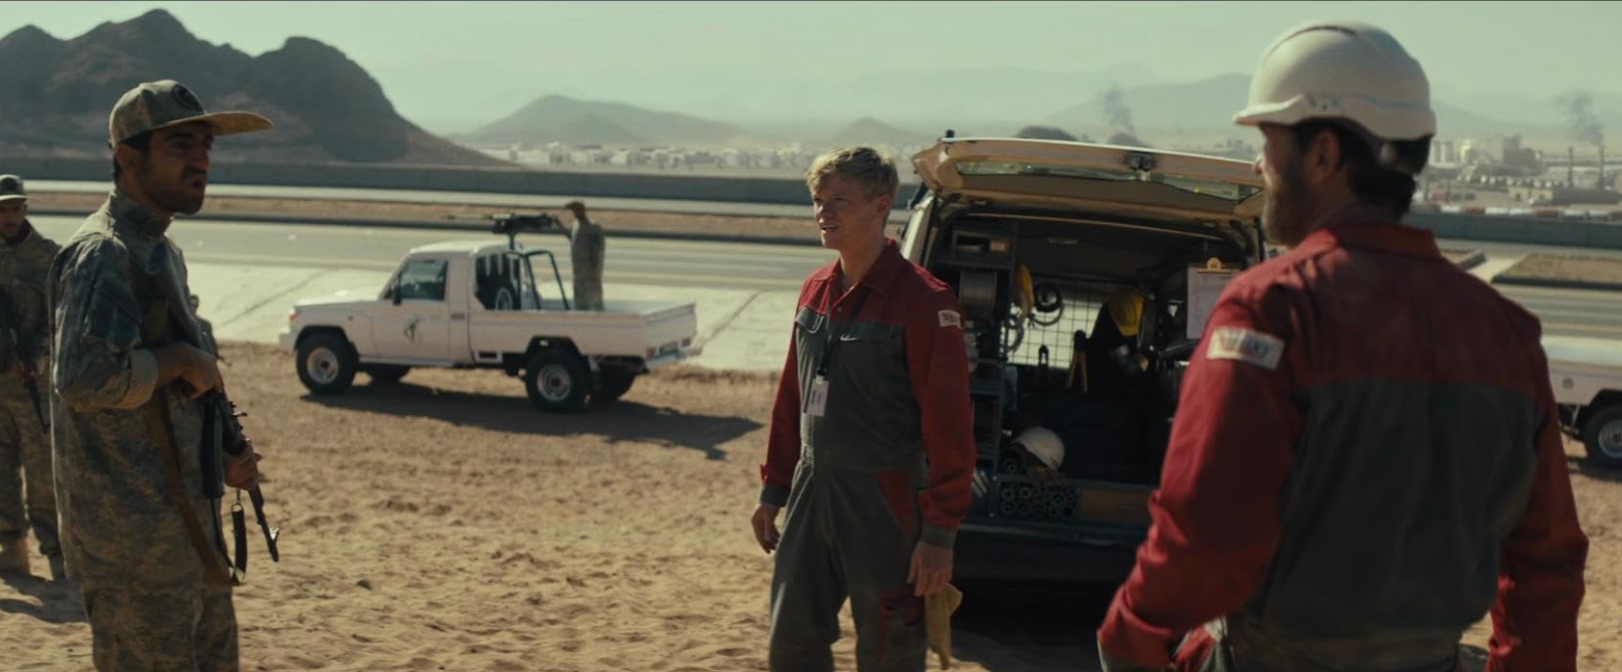 Gerard Butler ( rechts im Bild) als Tom Harris im Film Kandahar